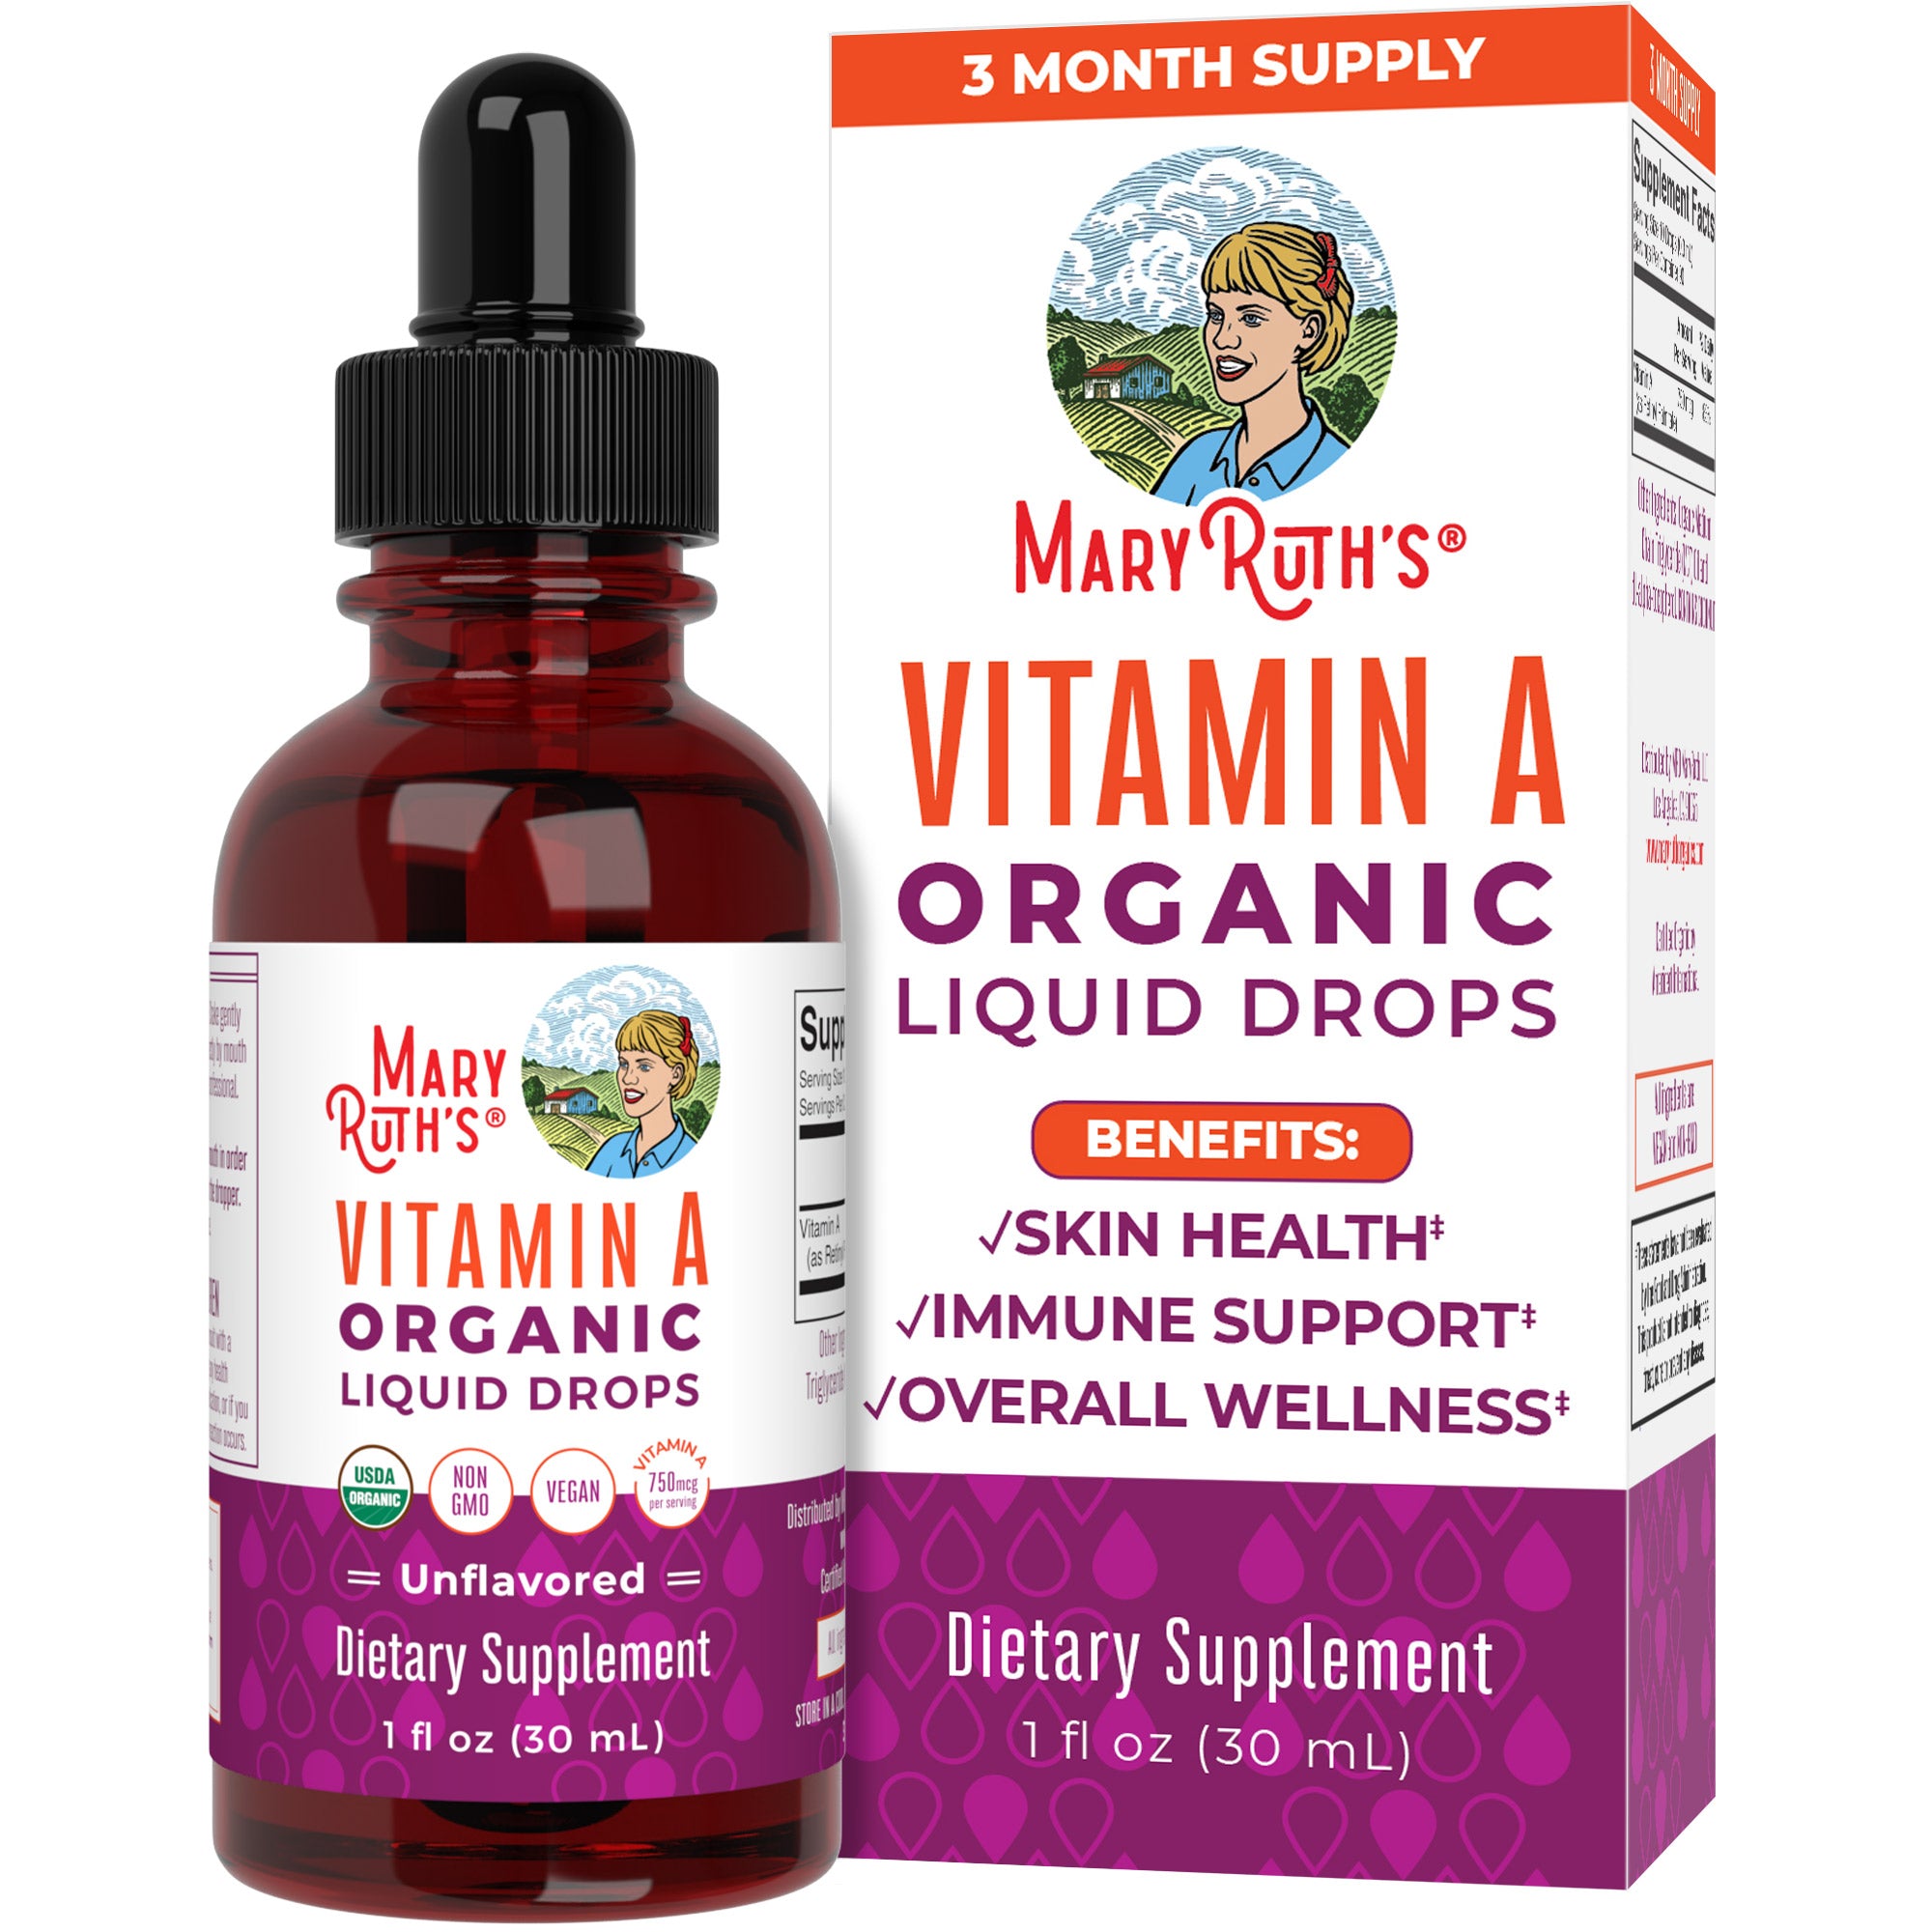 Vitamin A Organic Liquid Drops